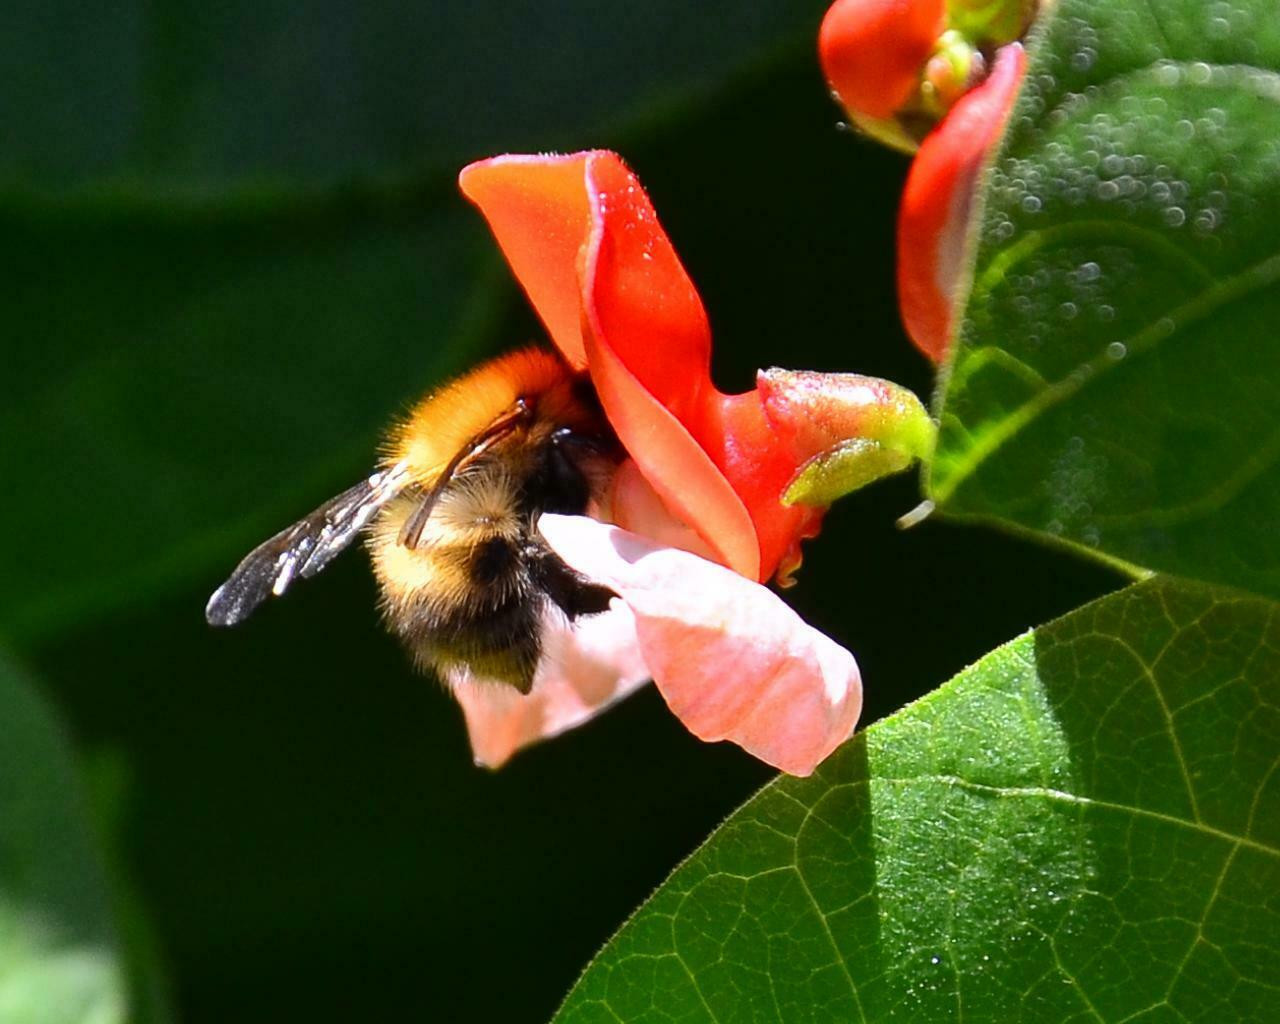 Bumblebee on a runner bean flower